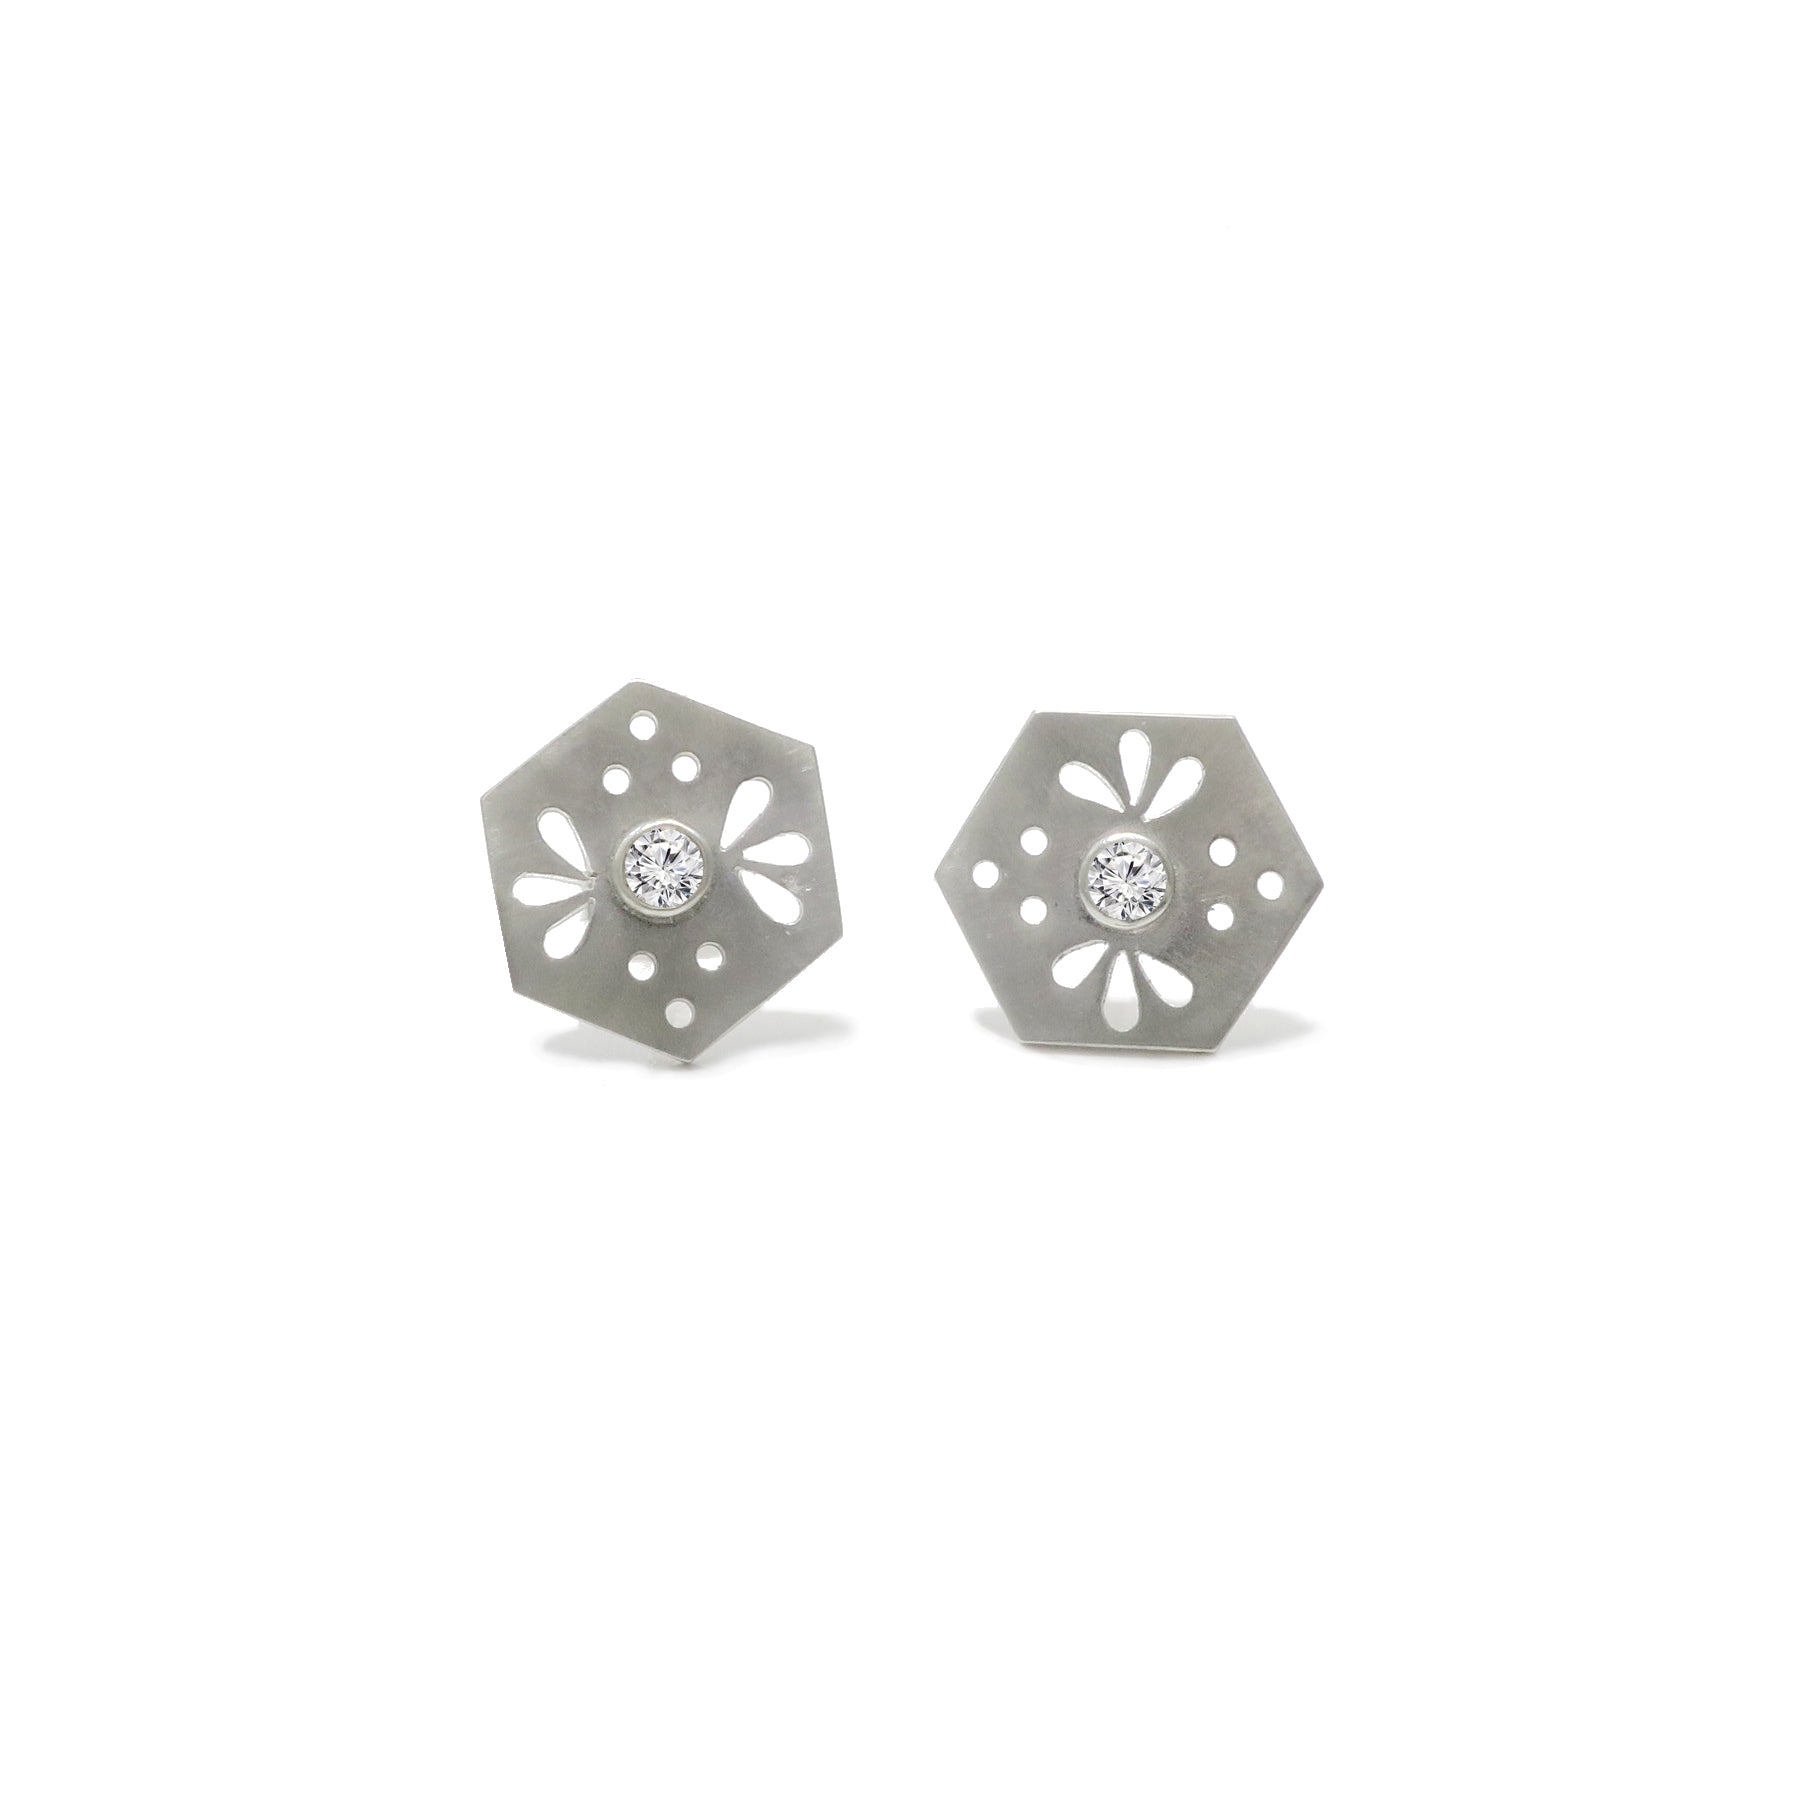 Hexagon Tile Bee Stud Earrings